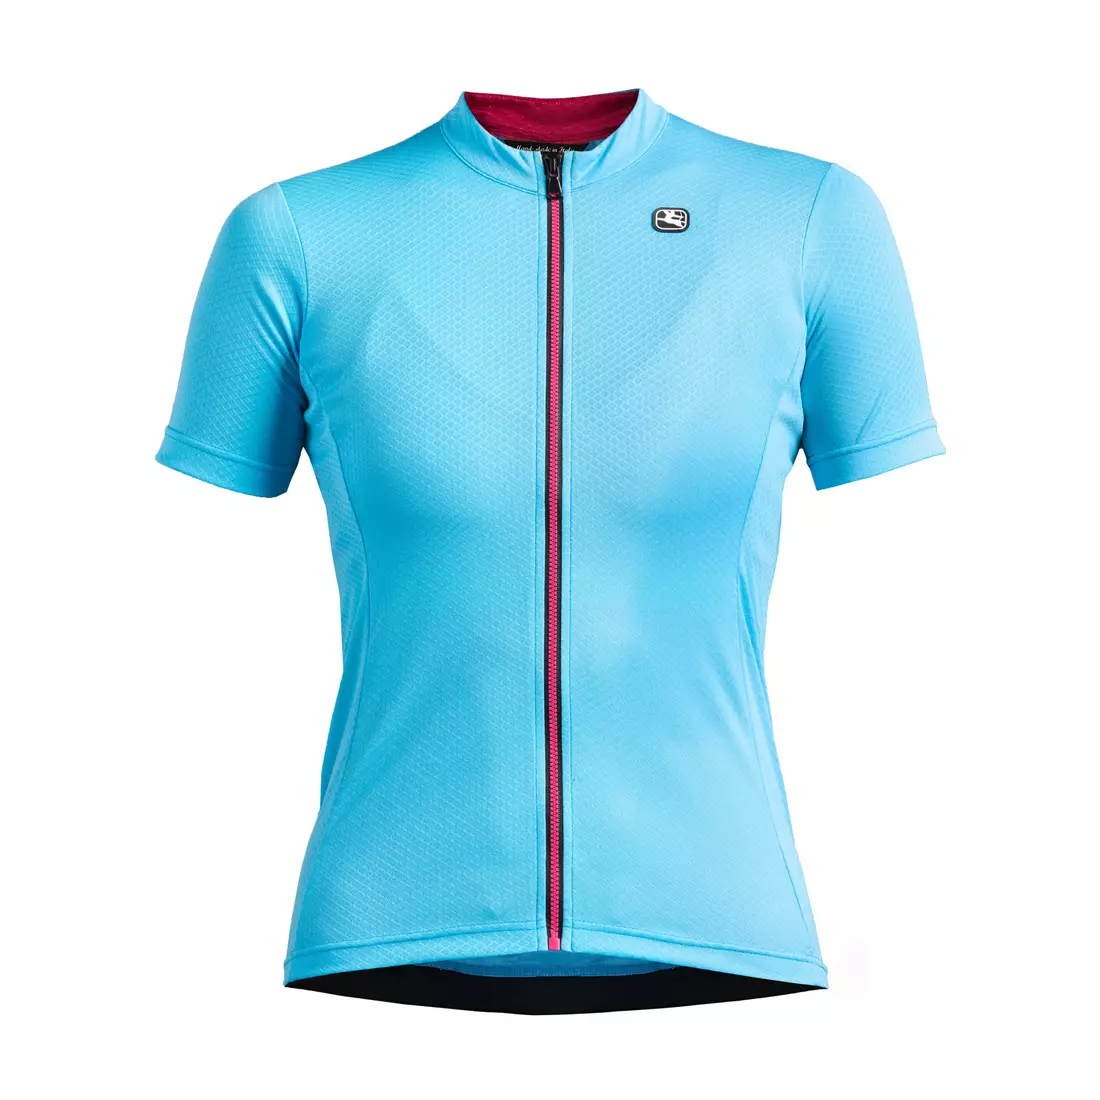 GIORDANA FUSION women's cycling jersey, blue